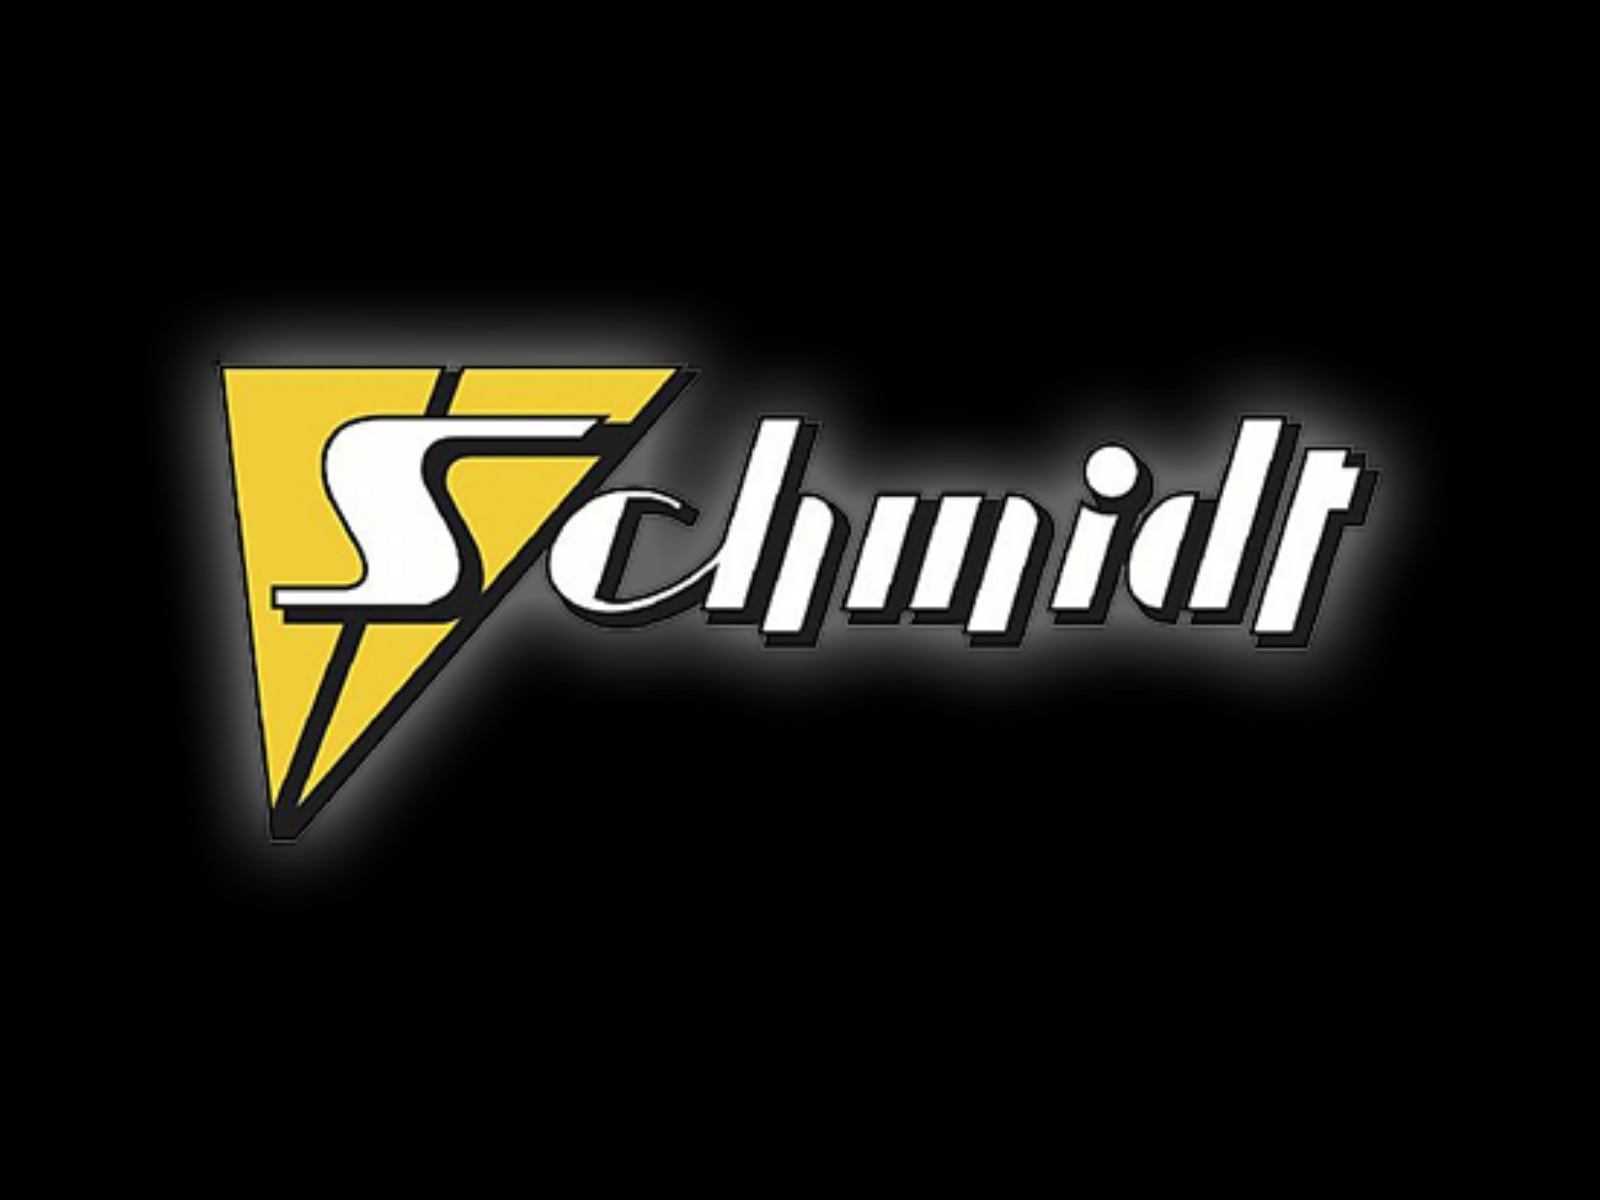 Schmidt Revolution Préparateur Allemand Fabriquant de Jantes